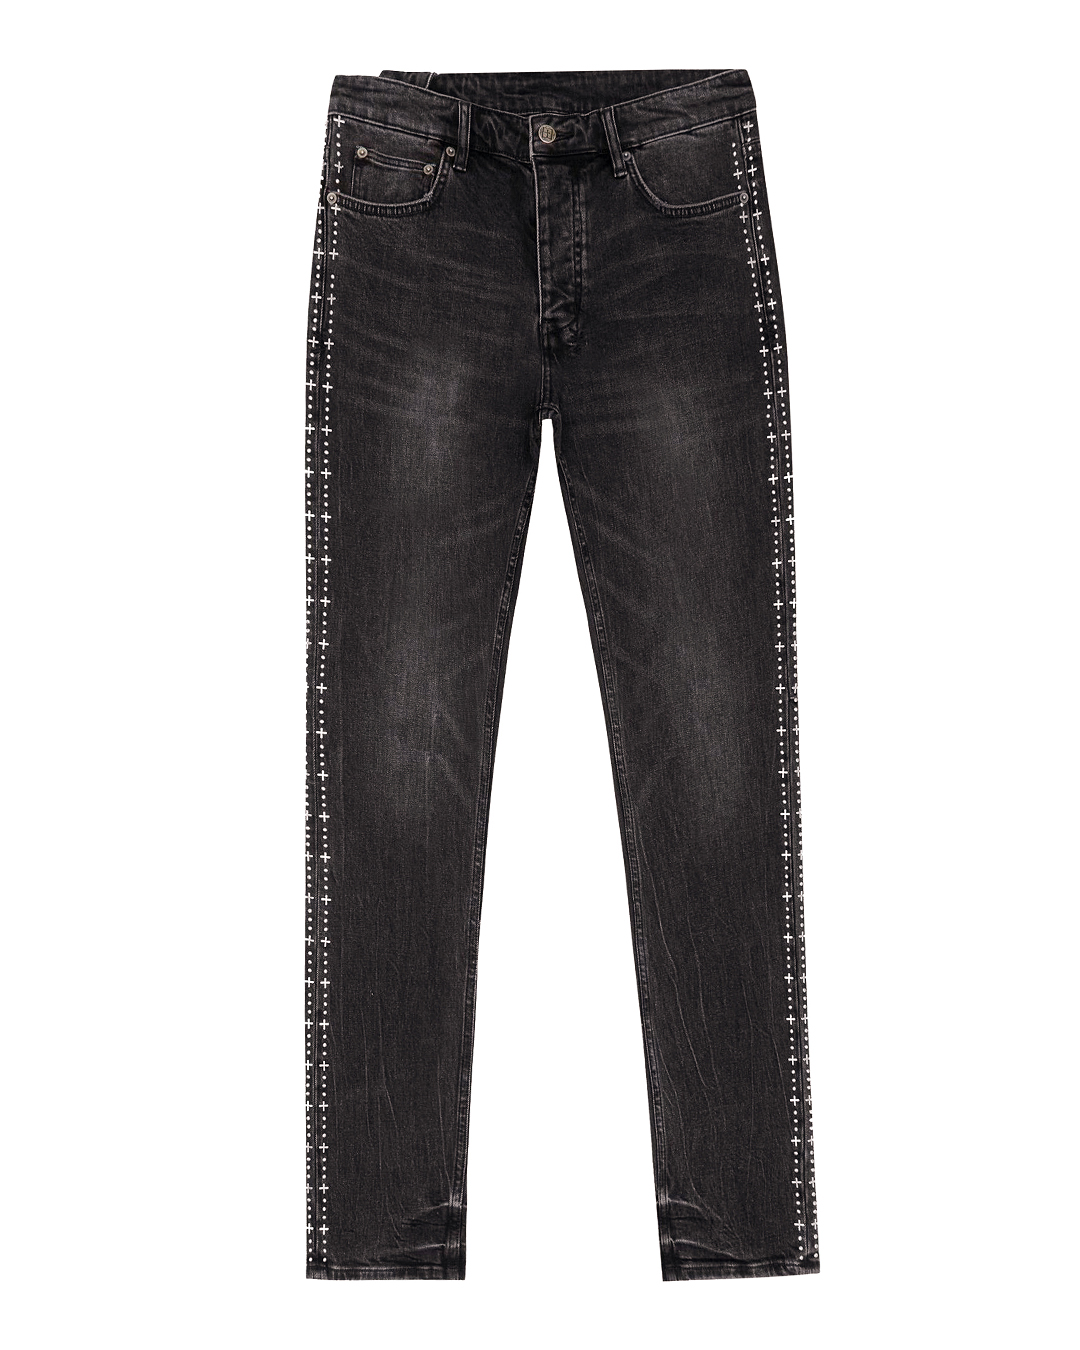 джинсы KSUBI MPS24DJ031 черный 32, размер 32 - фото 1